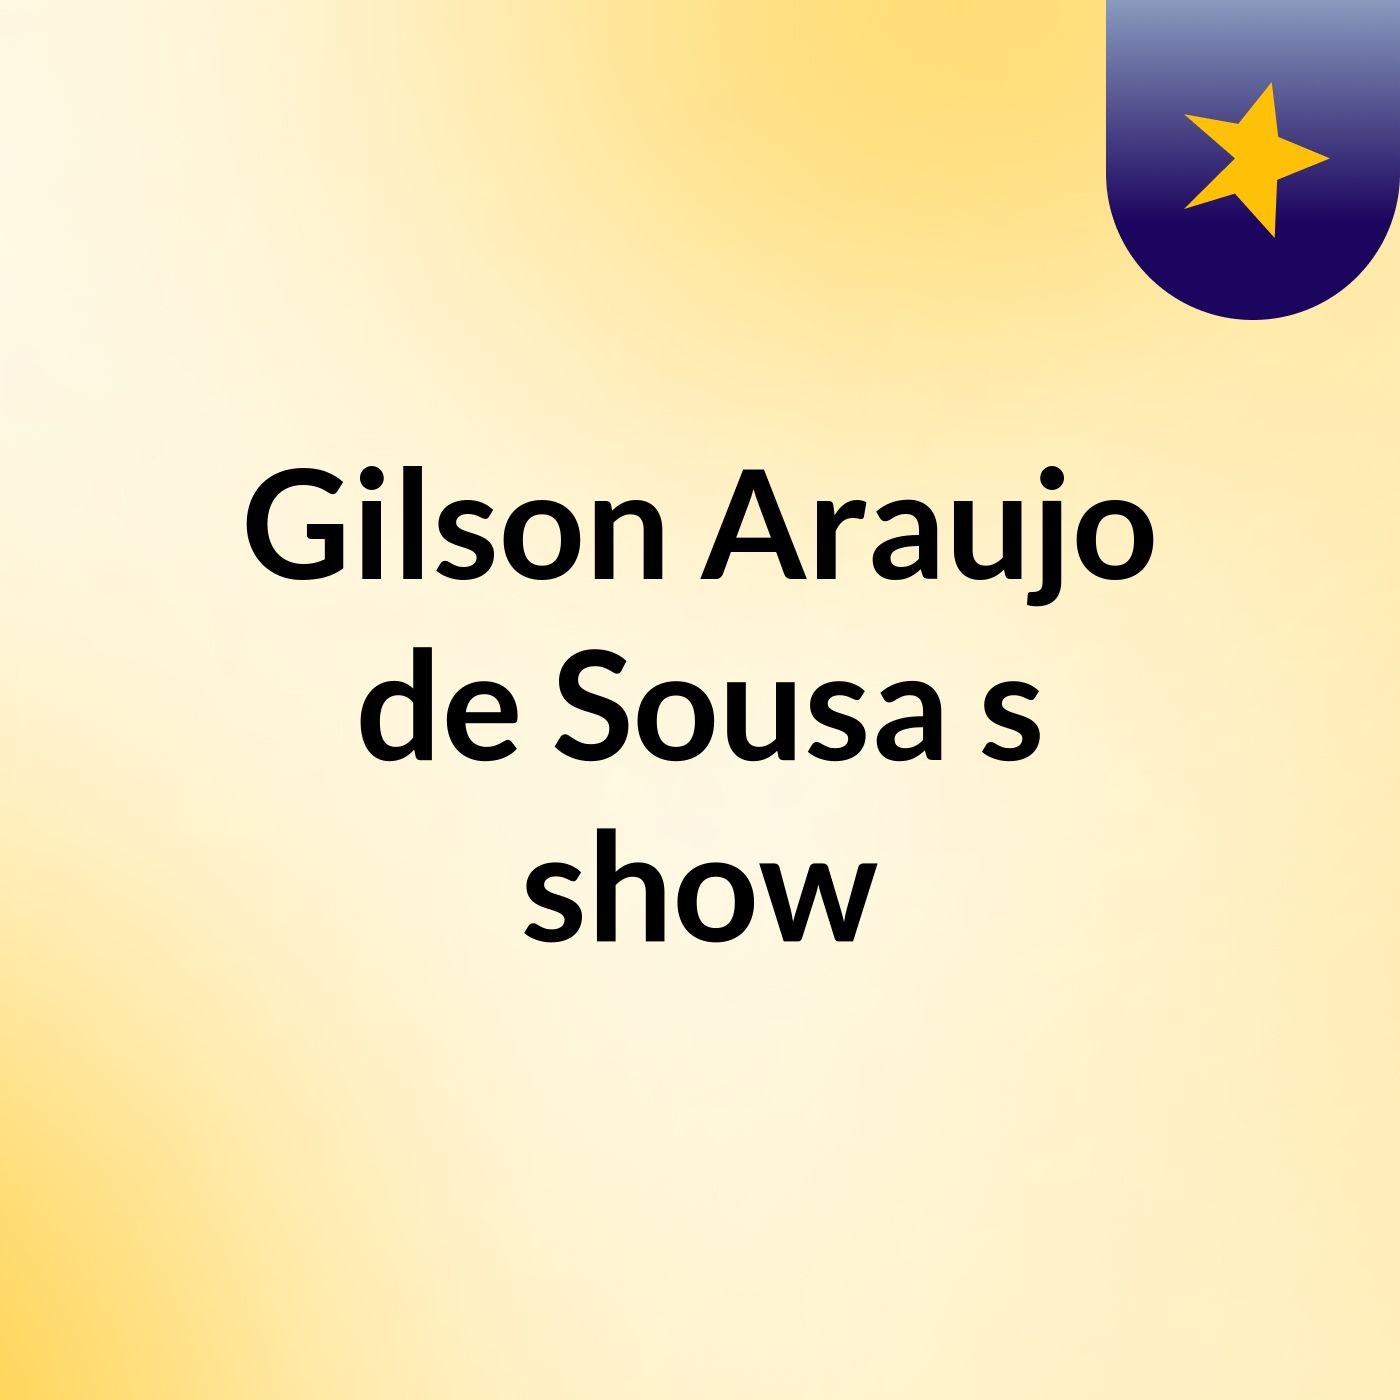 Gilson Araujo de Sousa's show